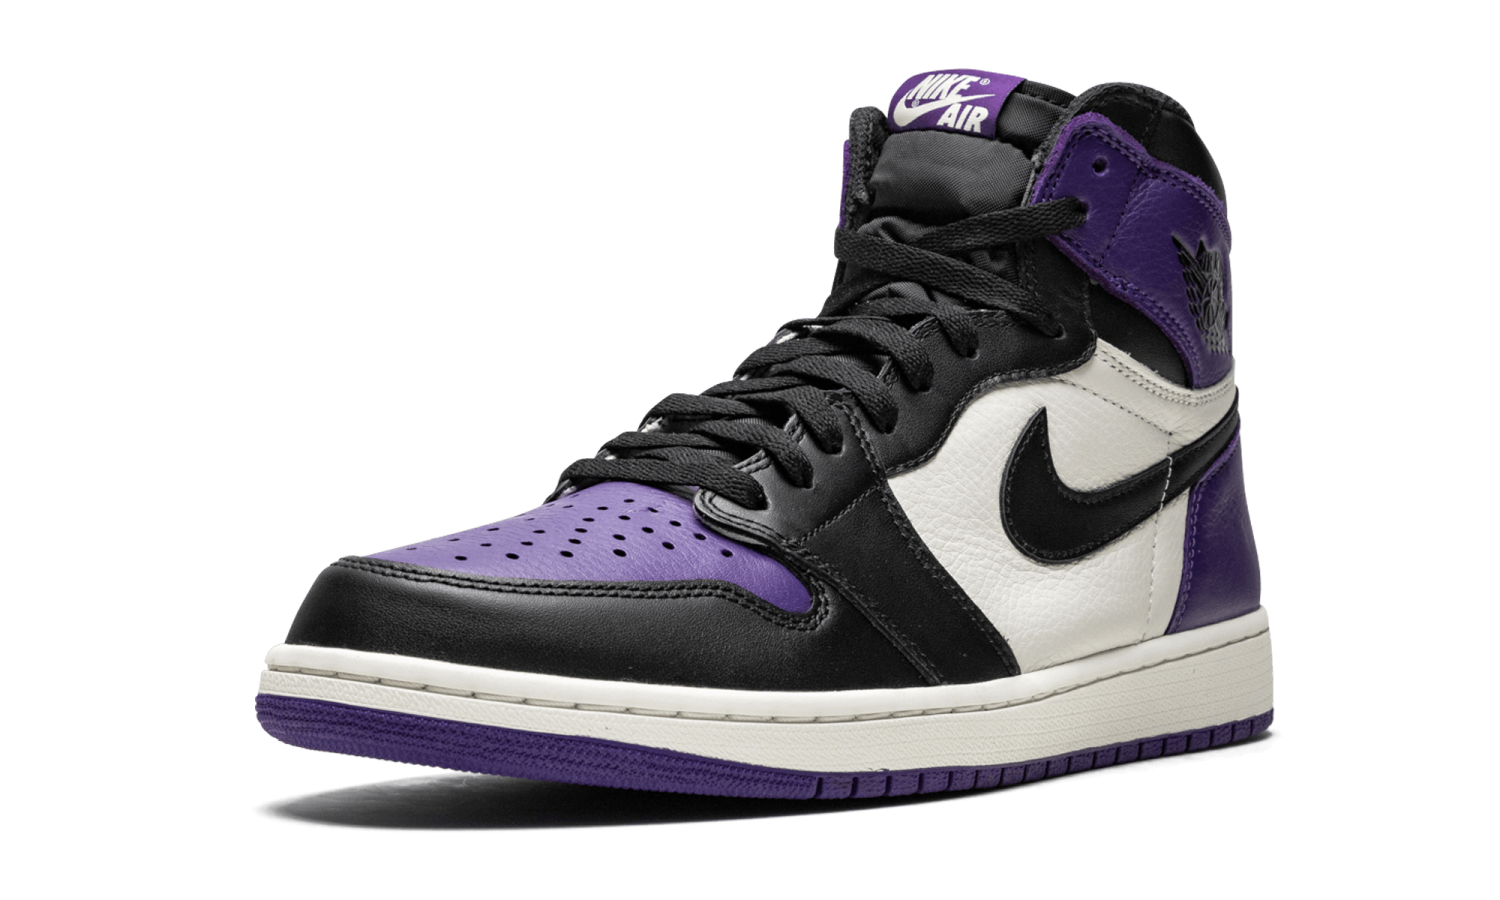 фото Jordan 1 Retro High OG “Court Purple” (Air Jordan 1 High)-555088 501